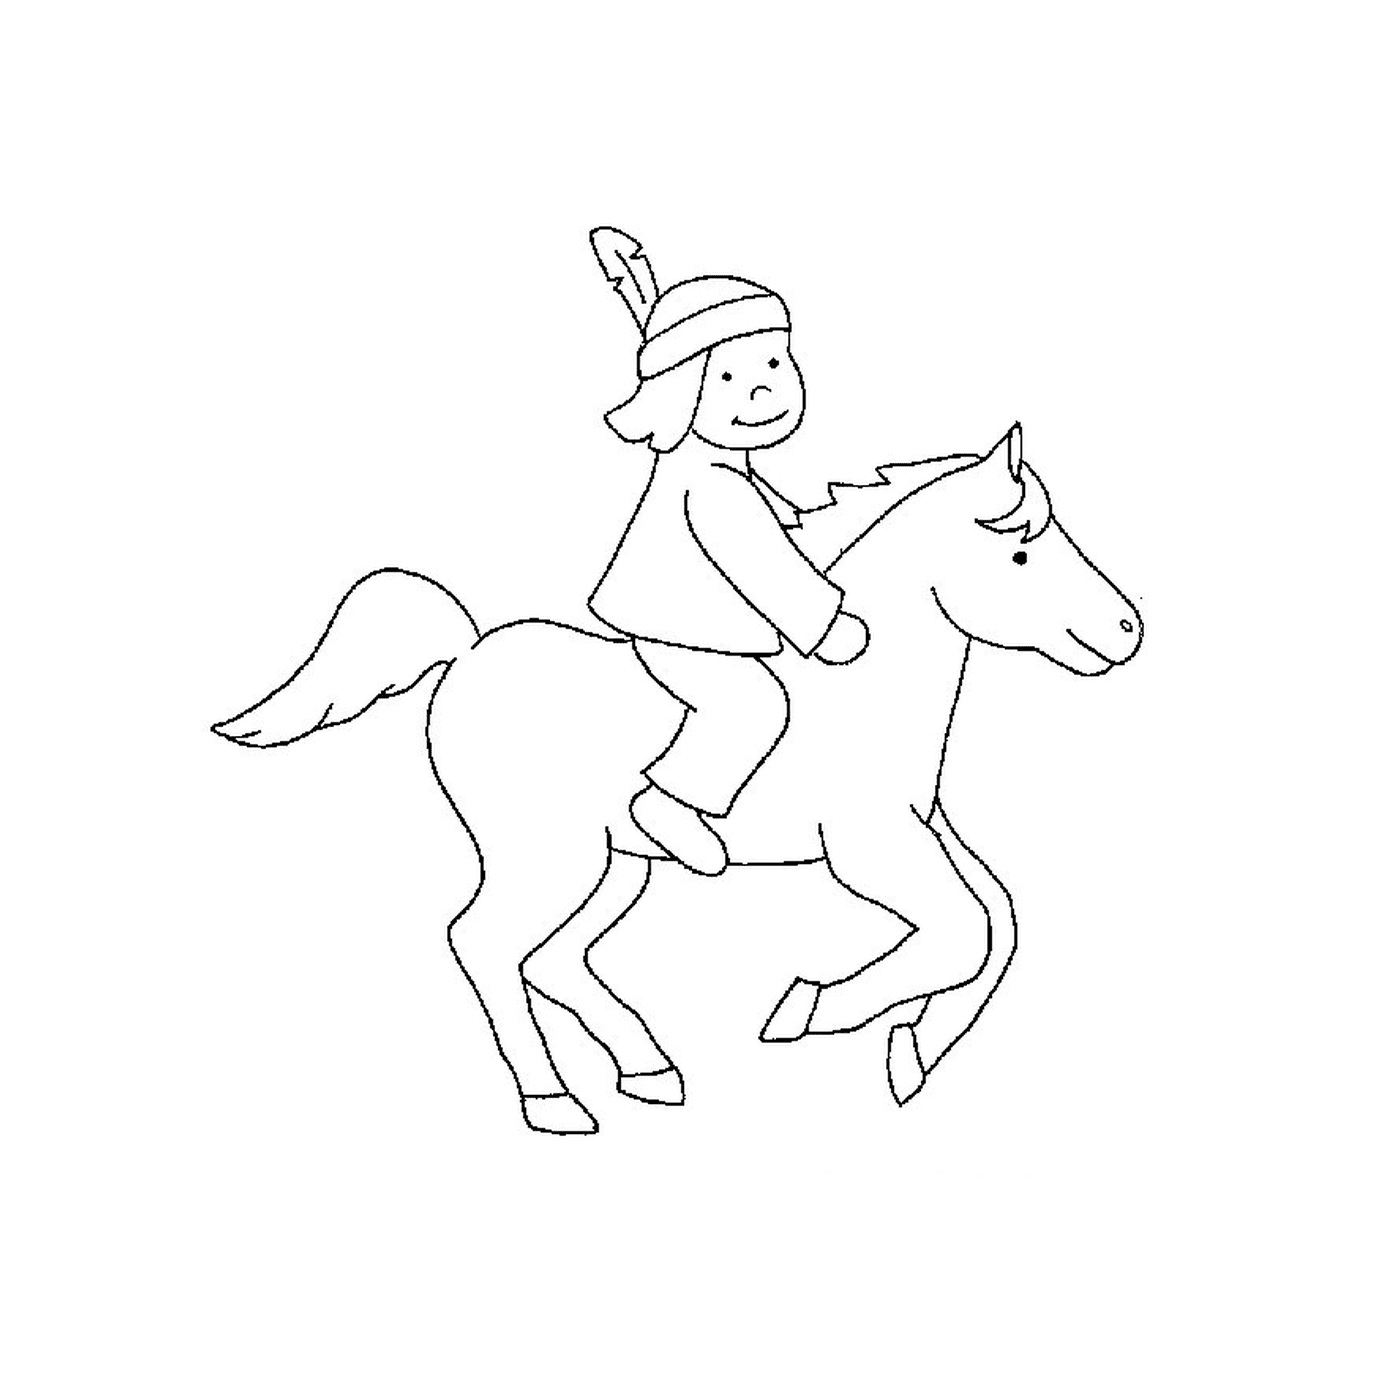  Indiano a cavalo - Uma pessoa monta um cavalo 